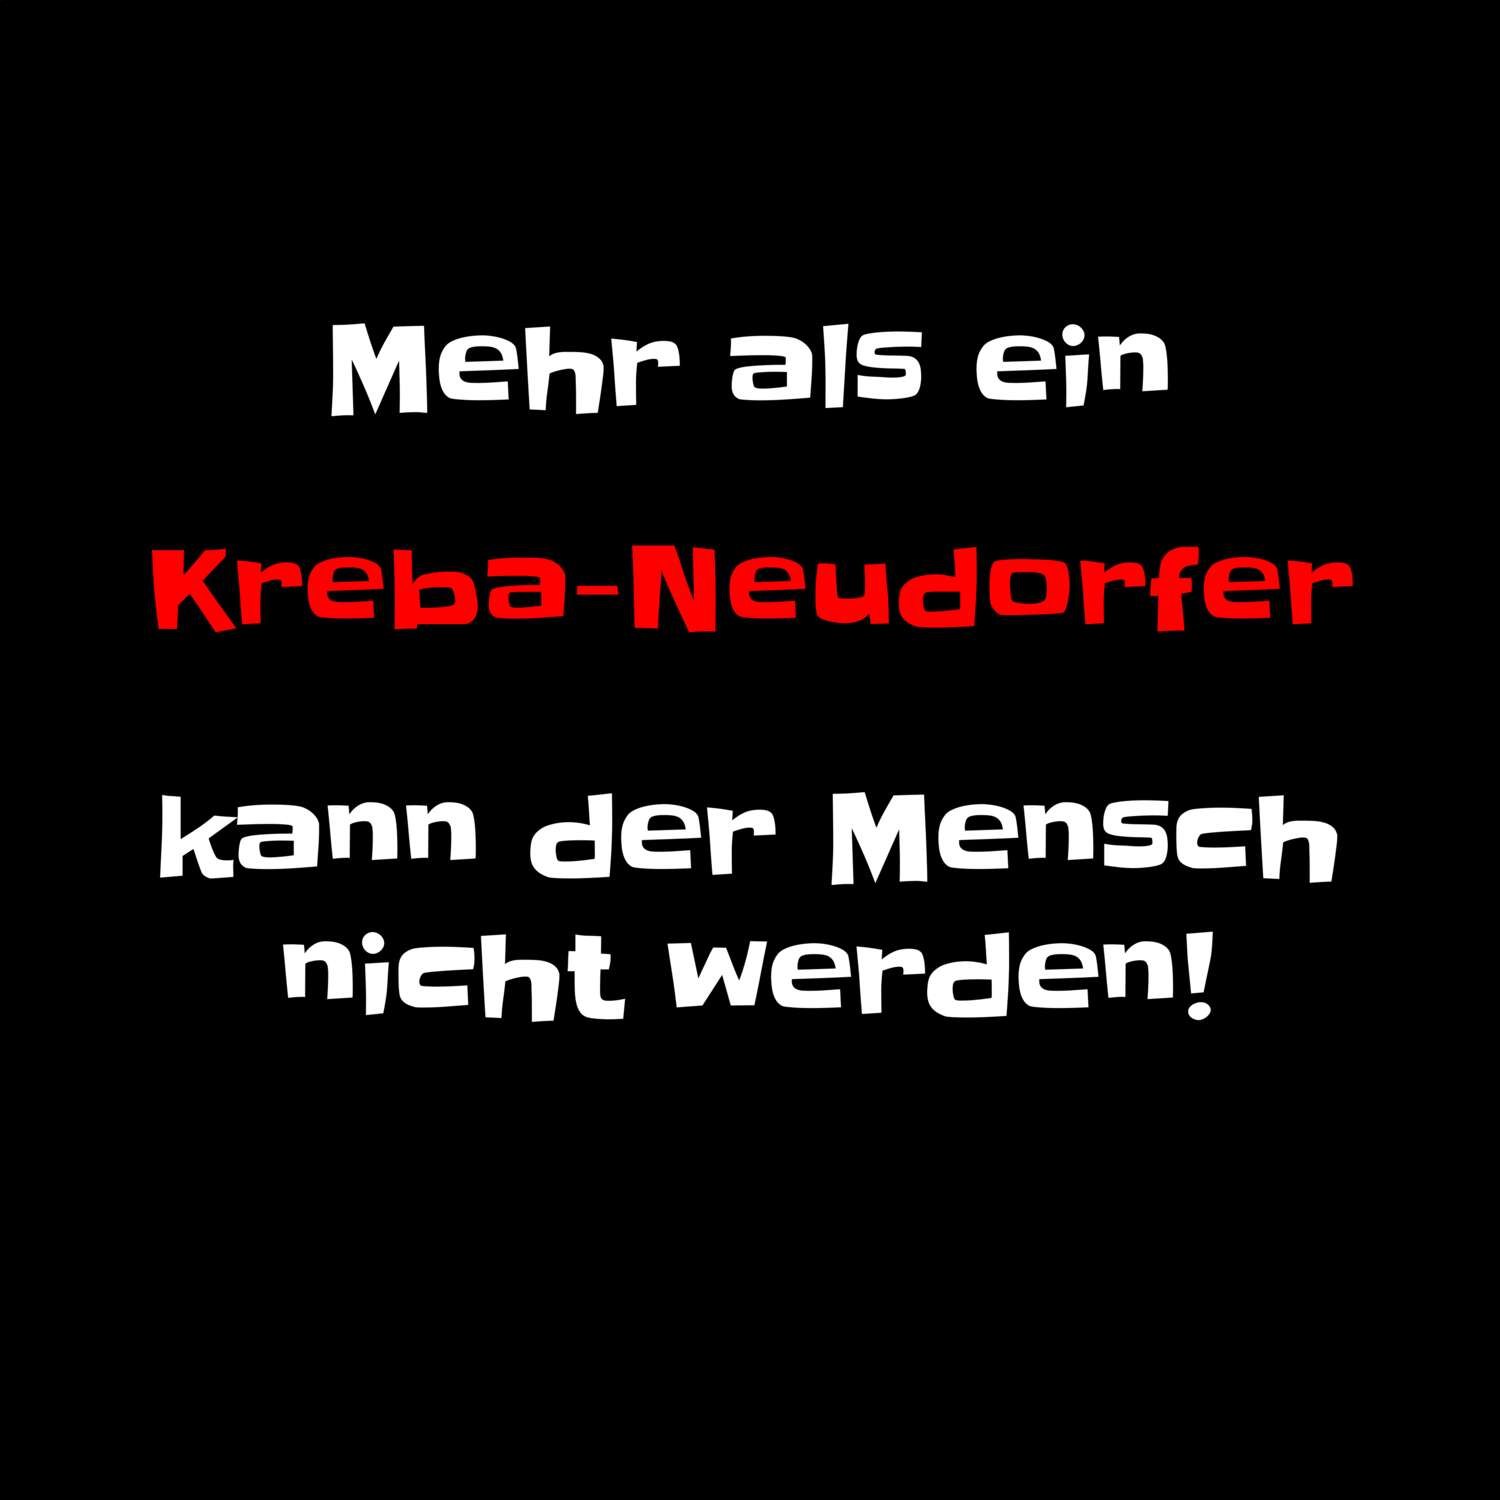 Kreba-Neudorf T-Shirt »Mehr als ein«